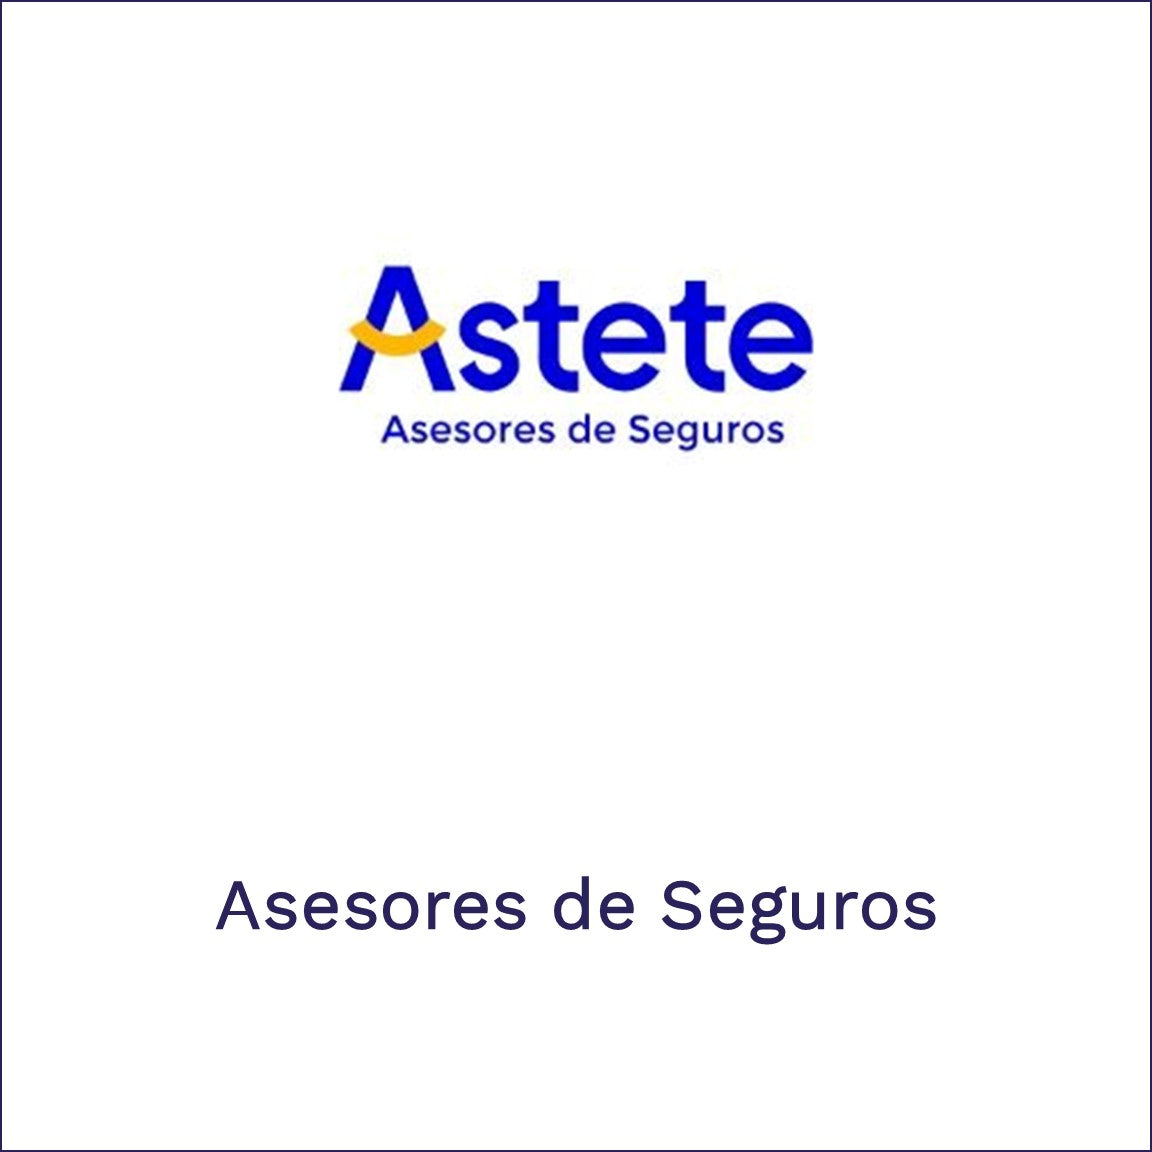 Astete - Asesores de Seguros